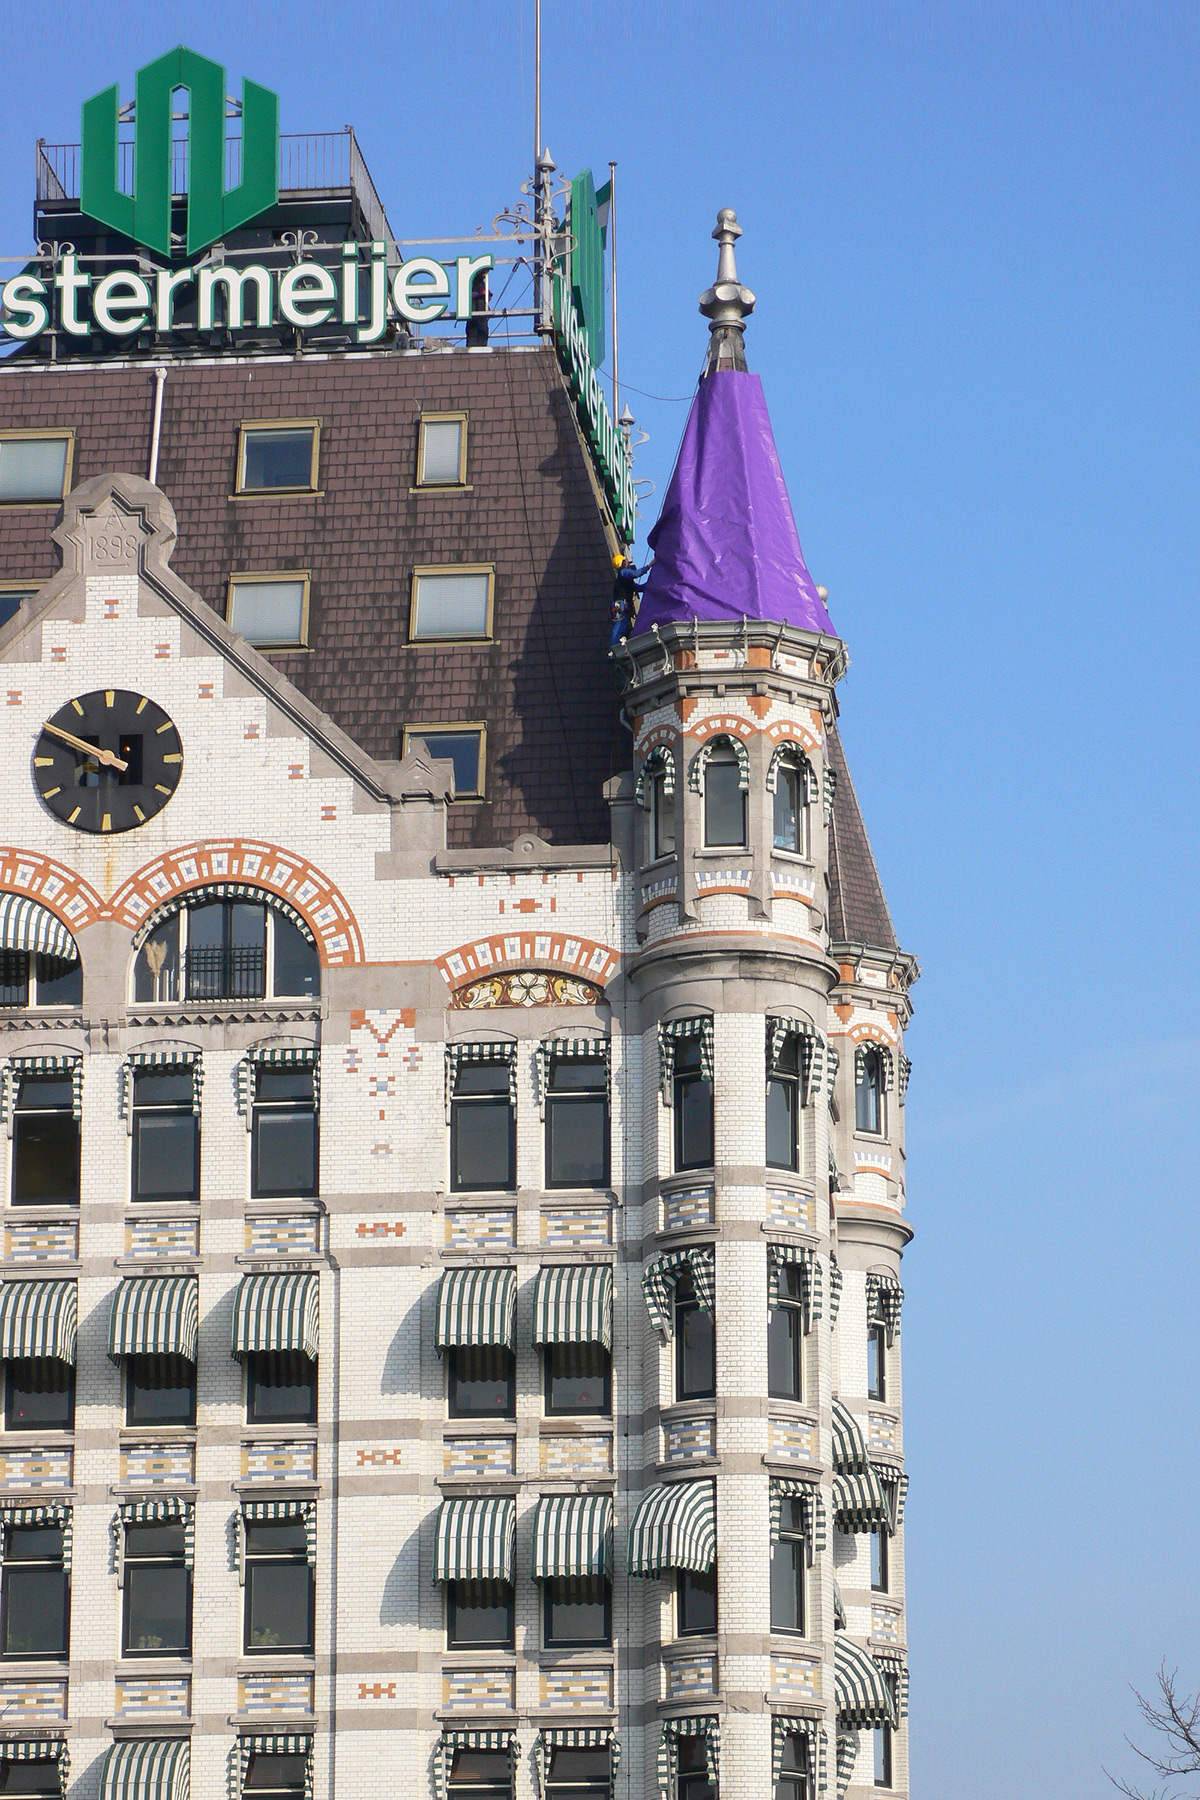 Adobe Portfolio CITY OF ARCHITECTURE Rotterdam City Dressing vollaers zwart  vollaerszwart purple